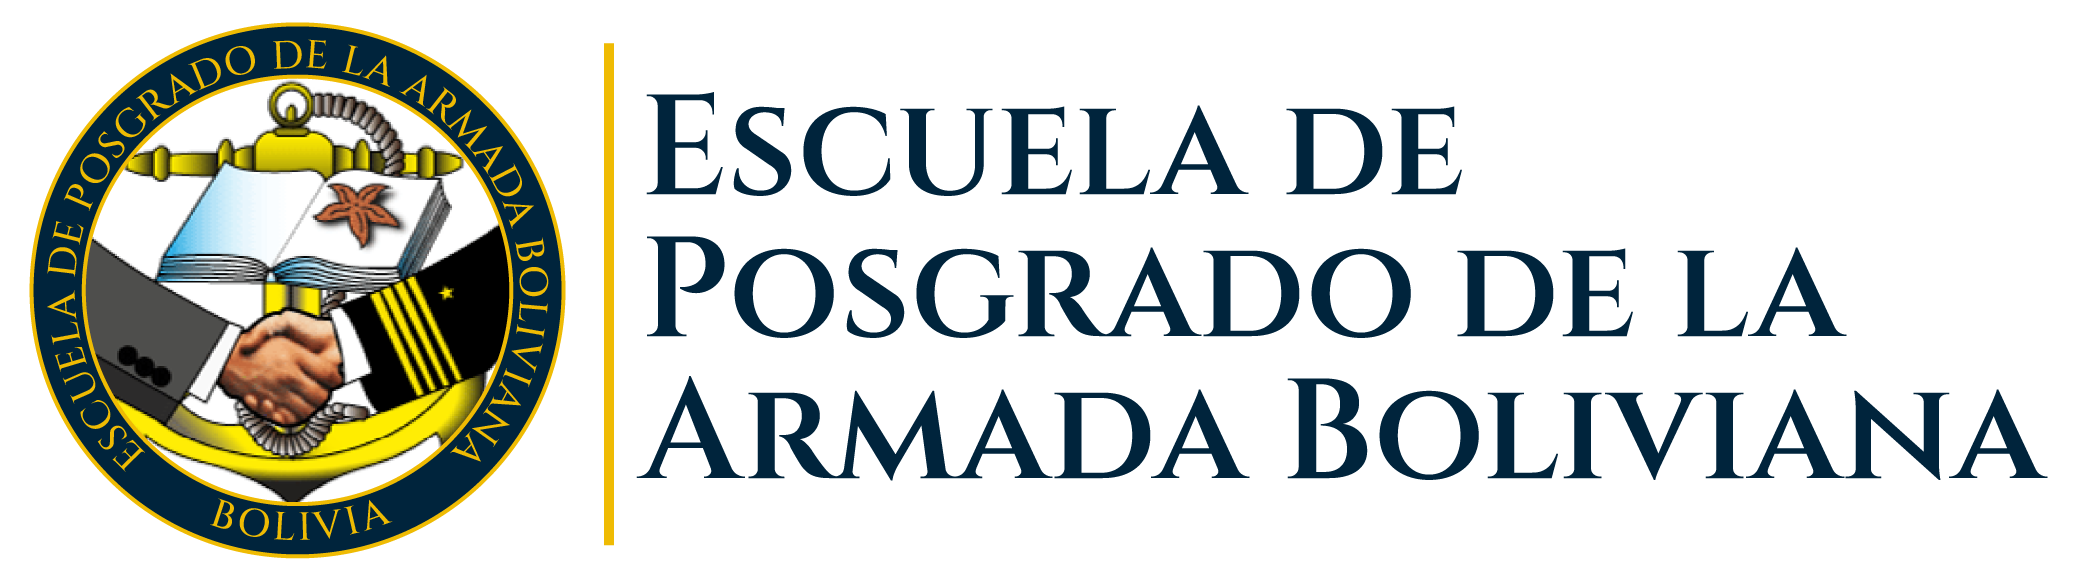 ESCUELA DE POSGRADO DE LA ARMADA BOLIVIANA